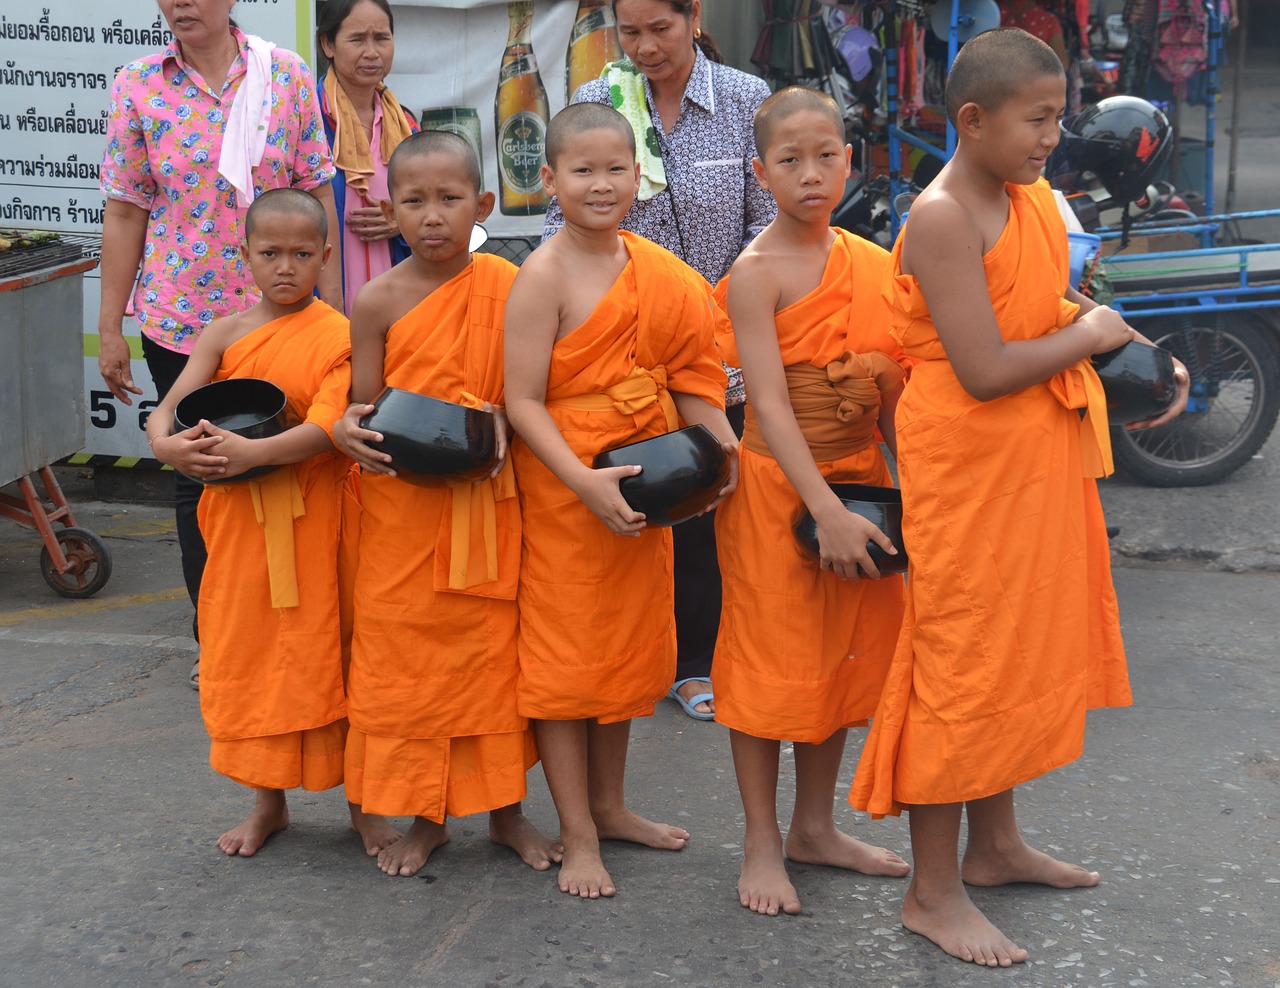 monks children thailand free photo